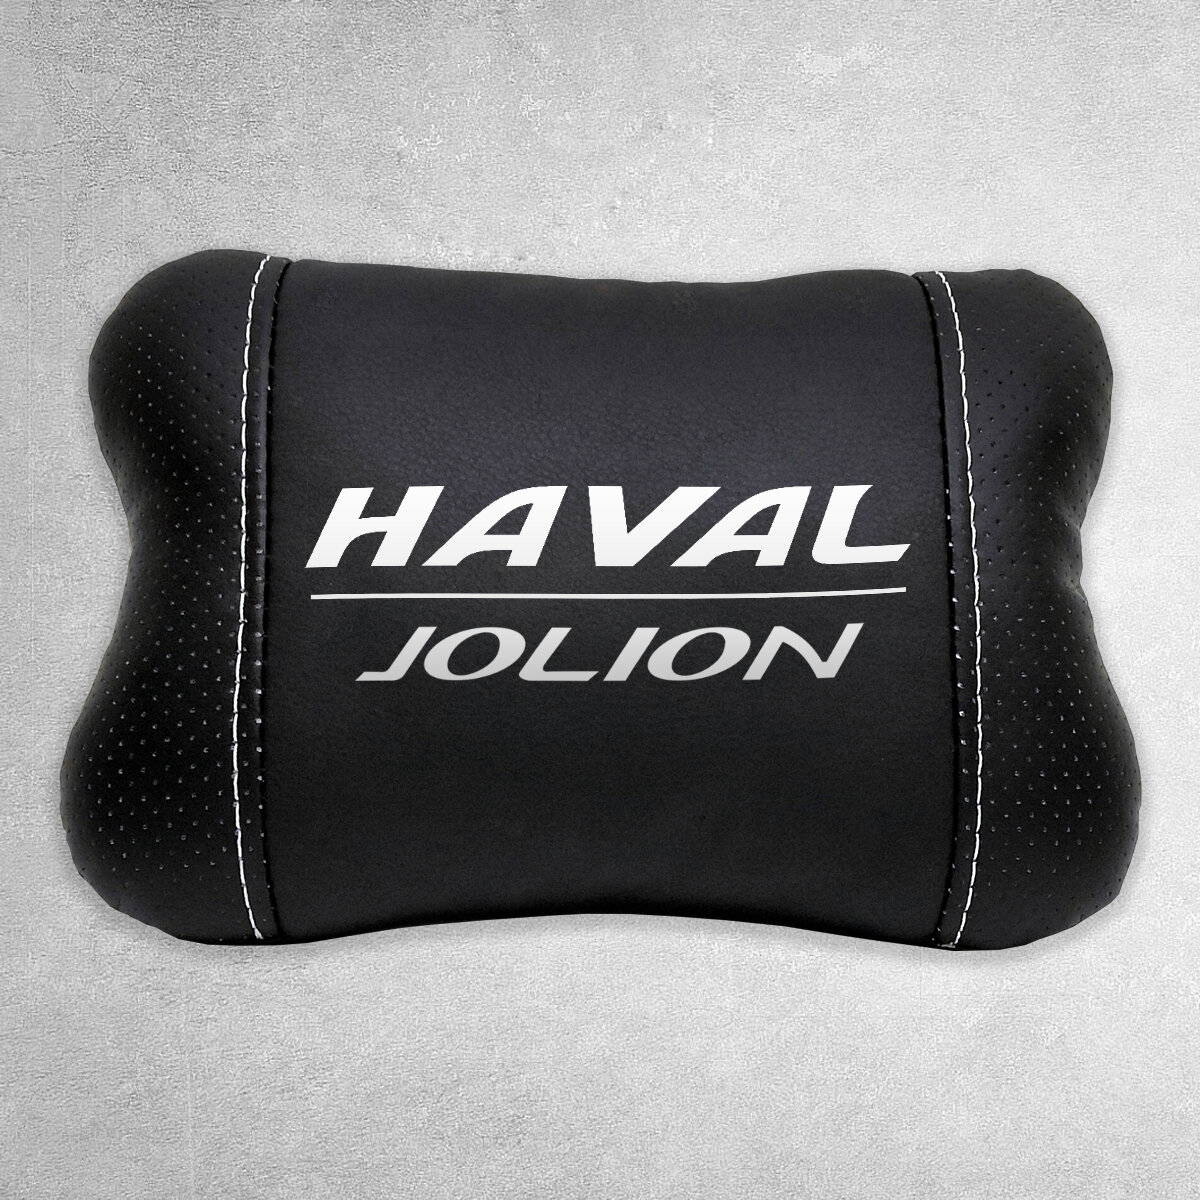 Автомобильная подушка под шею на подголовник эмблема Haval Jolion, для Хавал Джолион. Подушка для шеи в машину. Подушка на сиденье автомобиля.